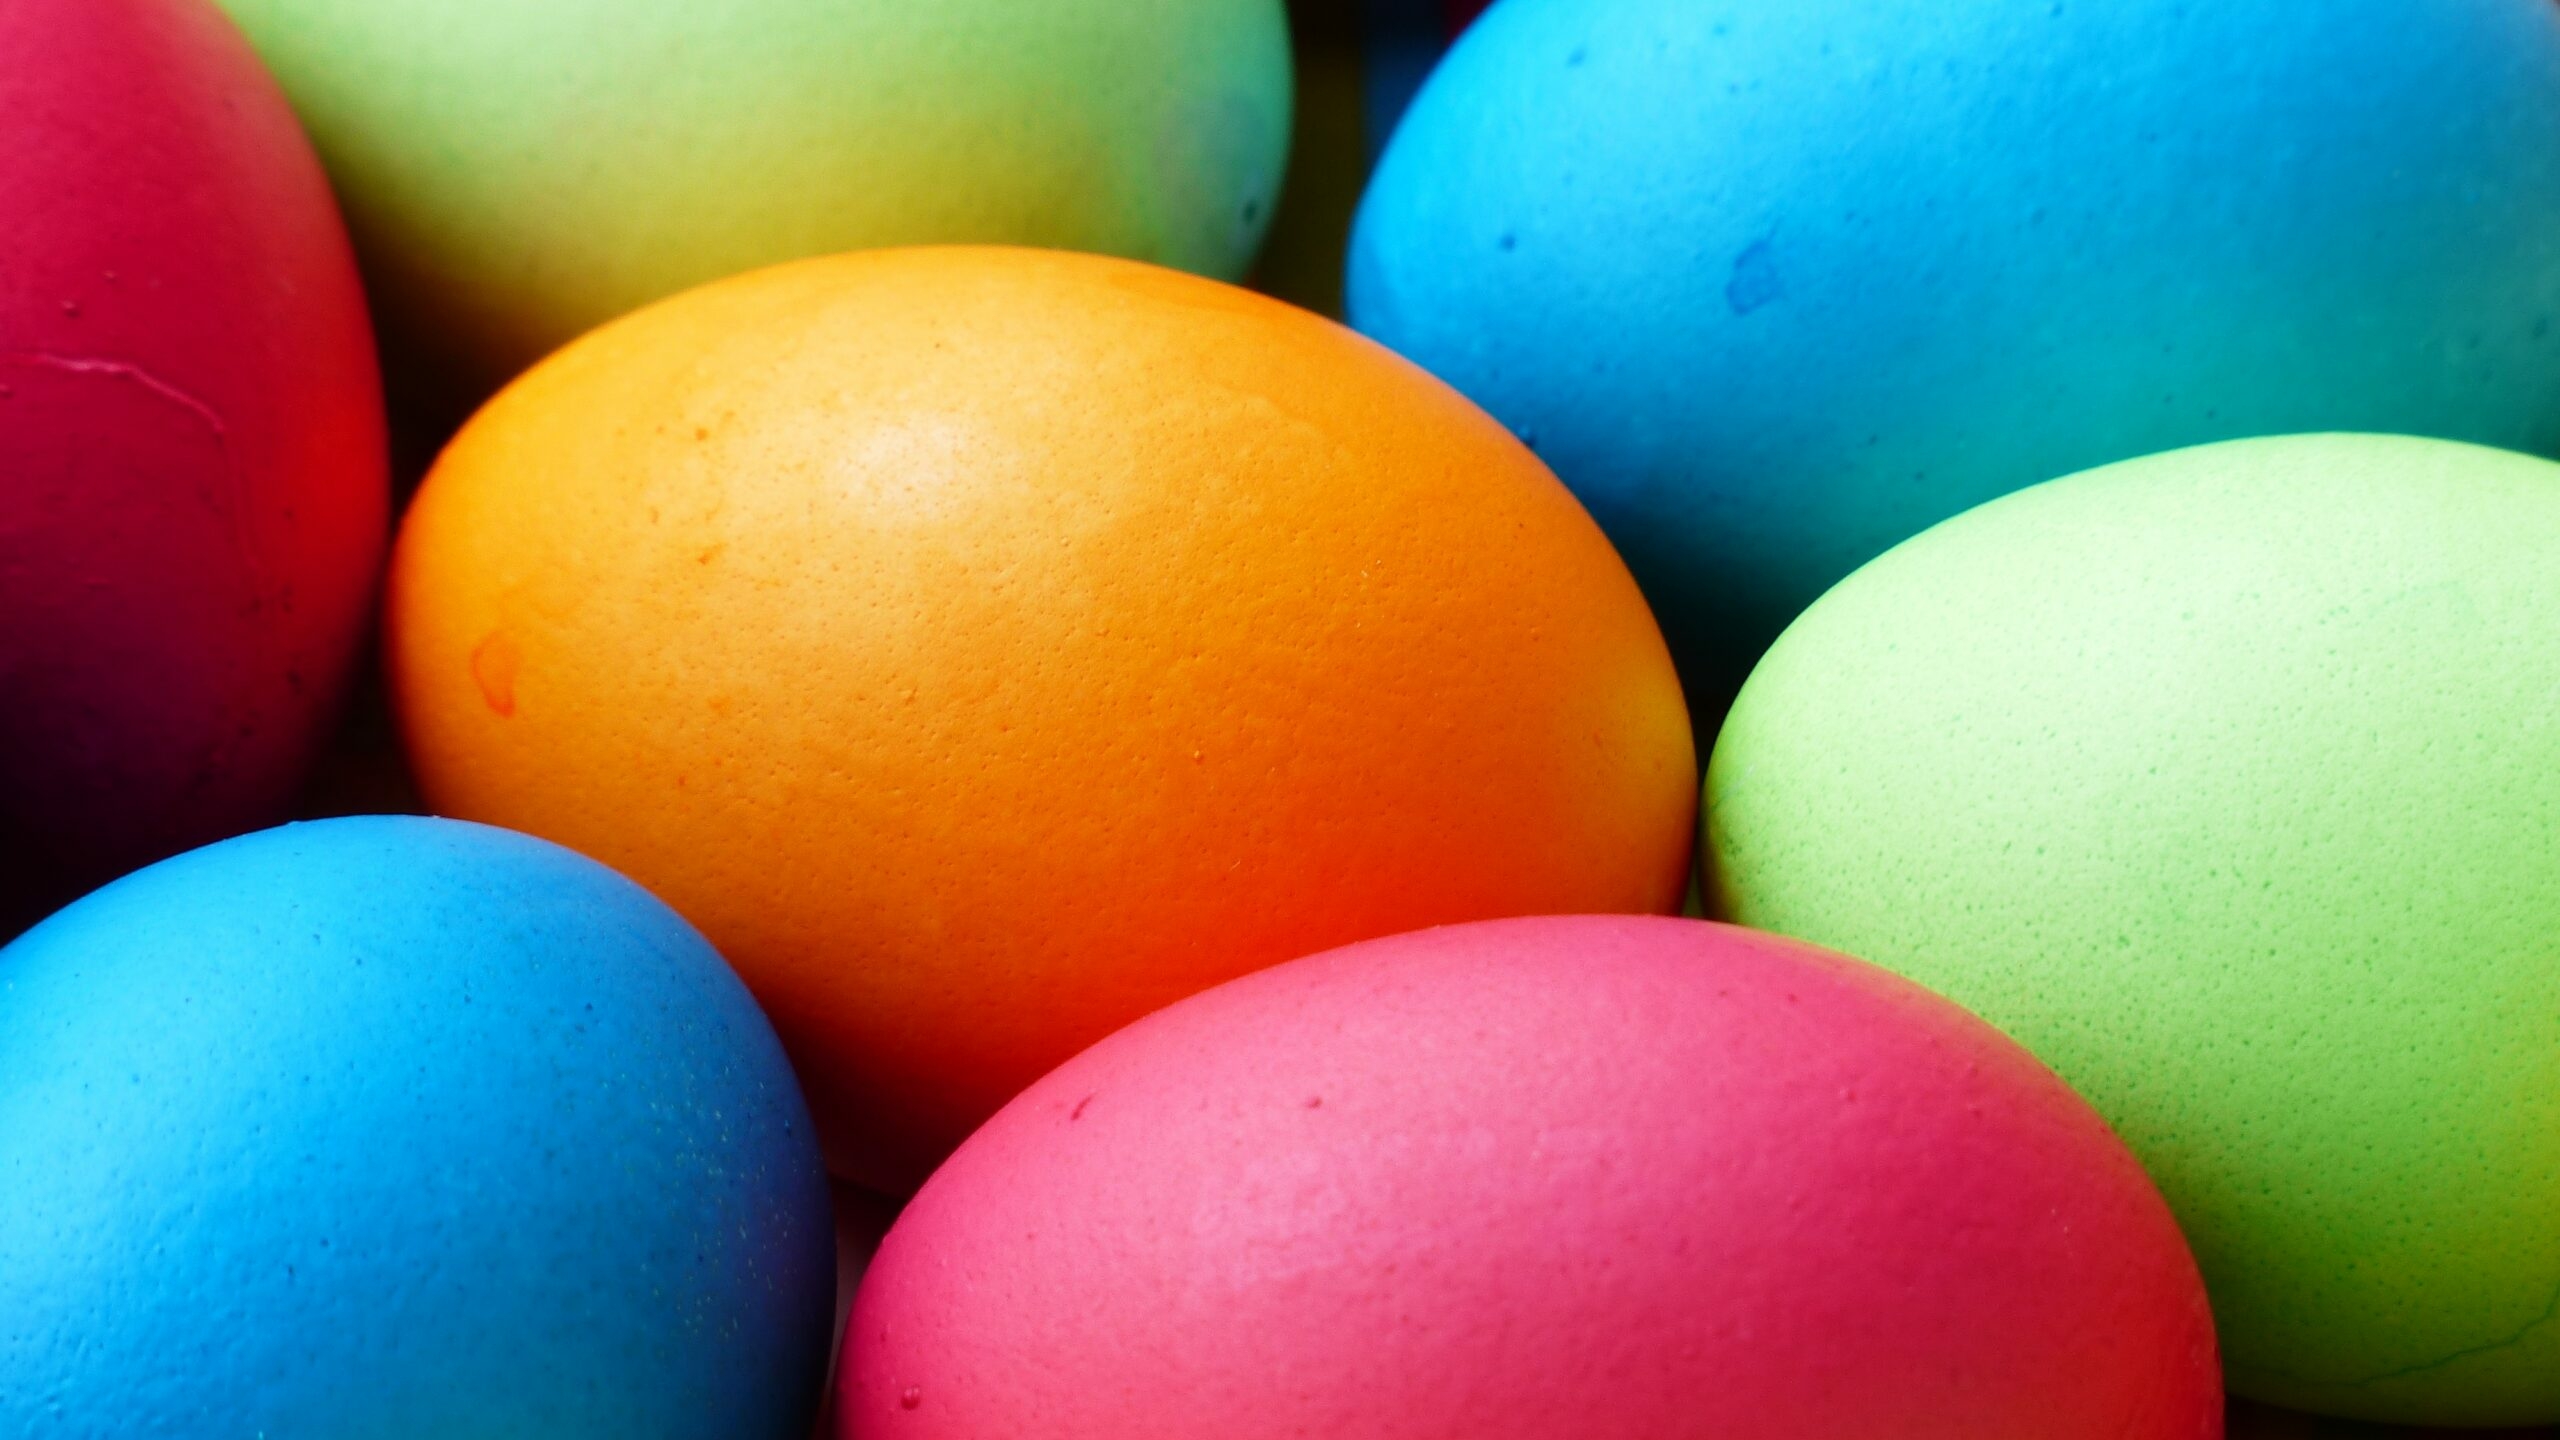 Стало известно, какие краски для пасхальных яиц являются токсичными